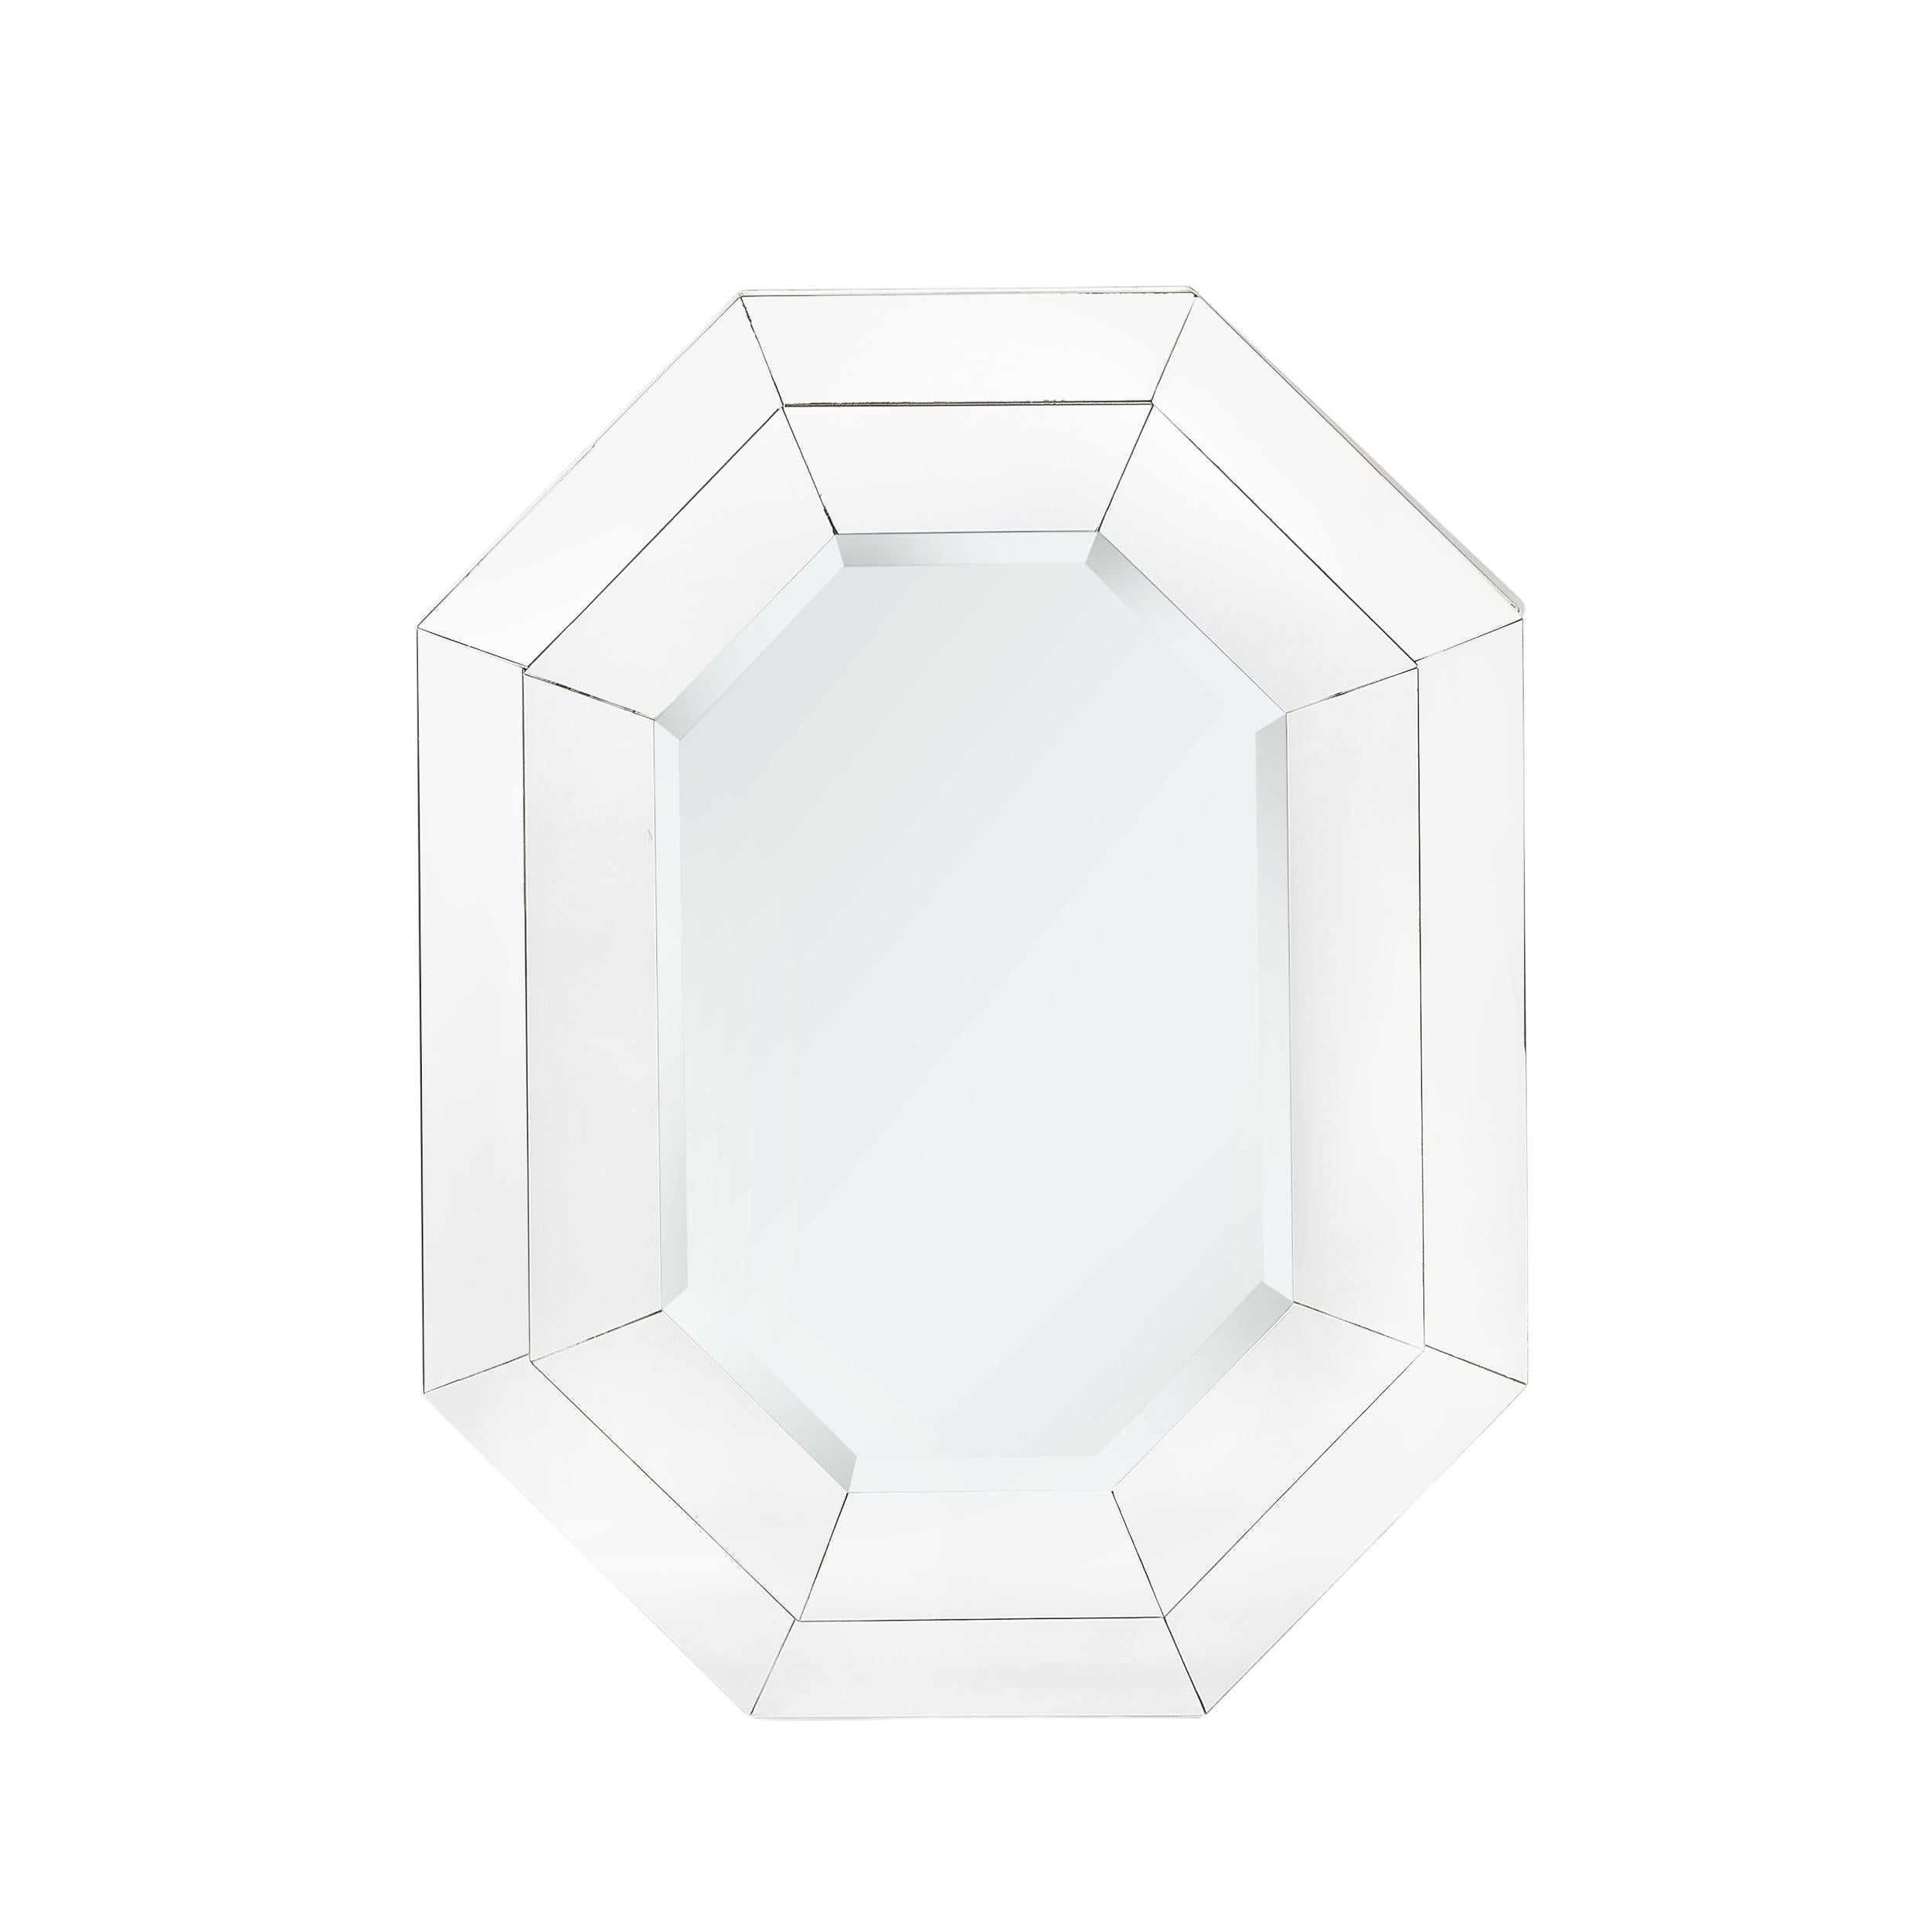 Dieser gut skalierte und glänzende Mid-Century Modernist Three-tier Octagonal Paneled Mirror with Beveled Detailing stammt aus den Vereinigten Staaten, Circa 1975. Die drei verschiedenen Ebenen aus Spiegelglas, die aus einzeln zugeschnittenen